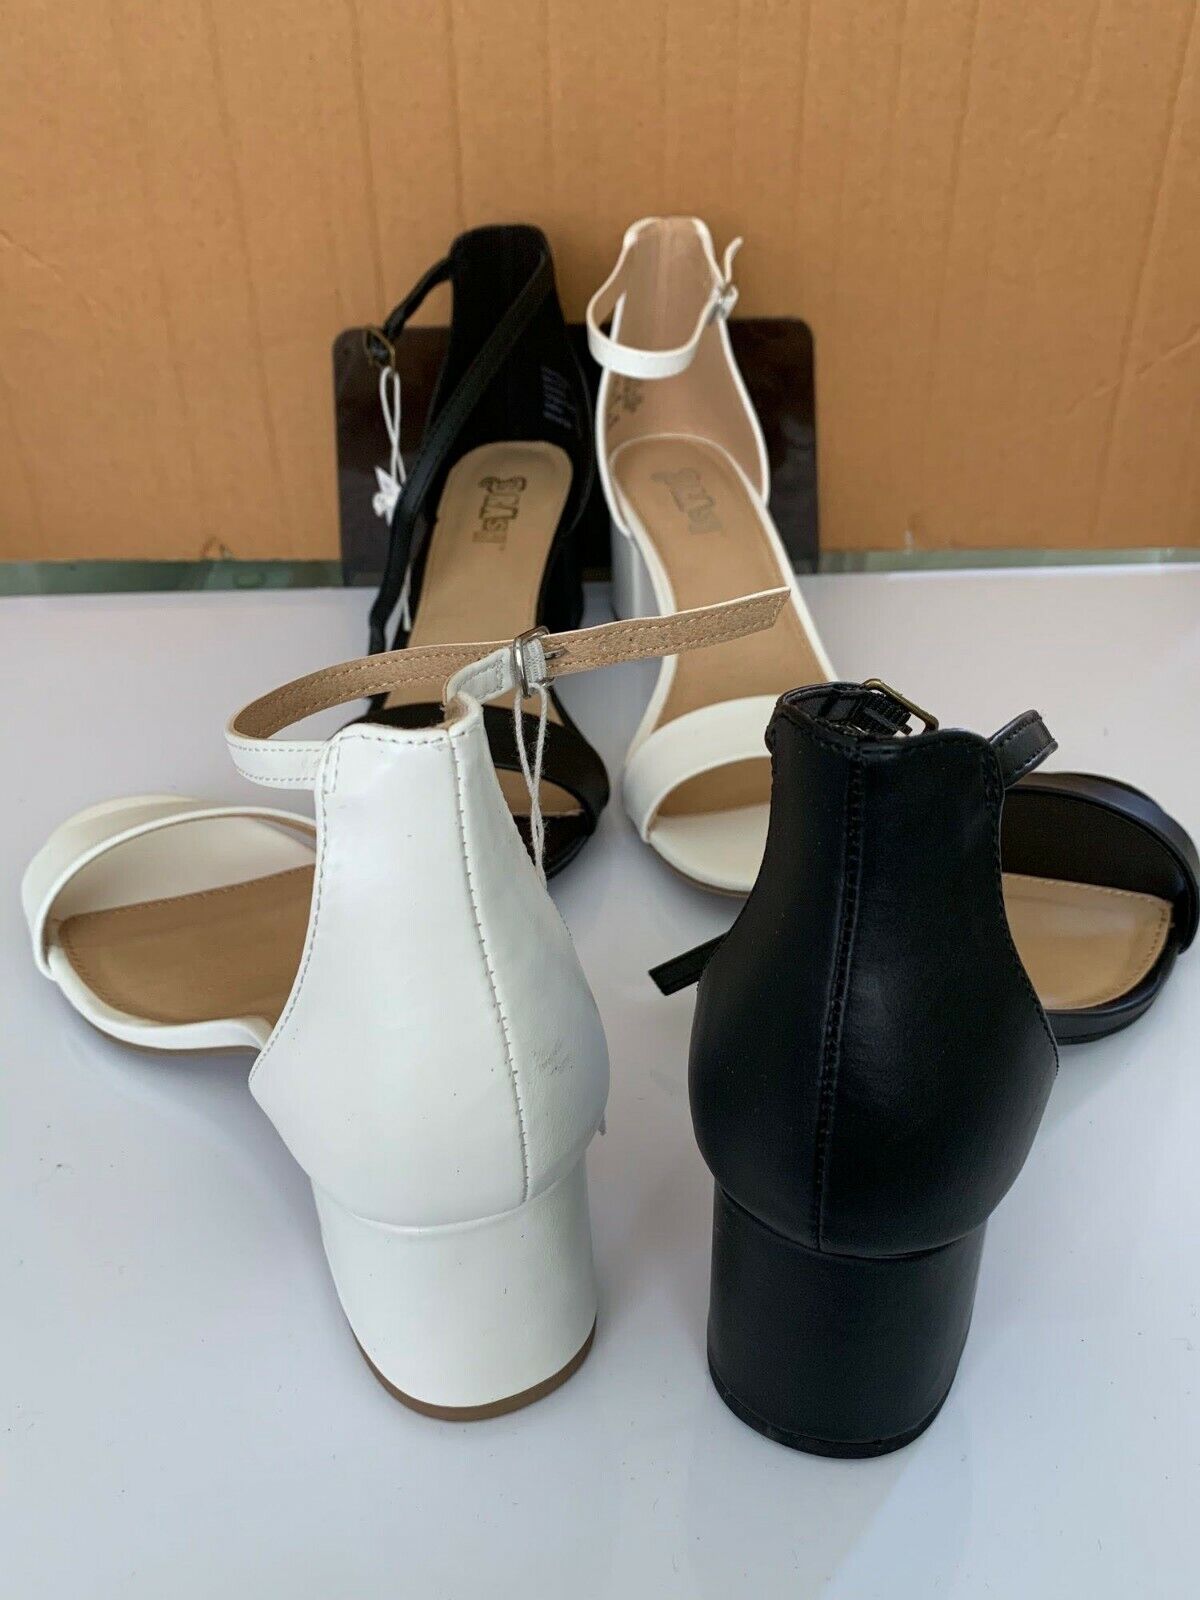 Brash Women's Black Heels Heeled Sandals Ankle Strap Size US 8 | eBay